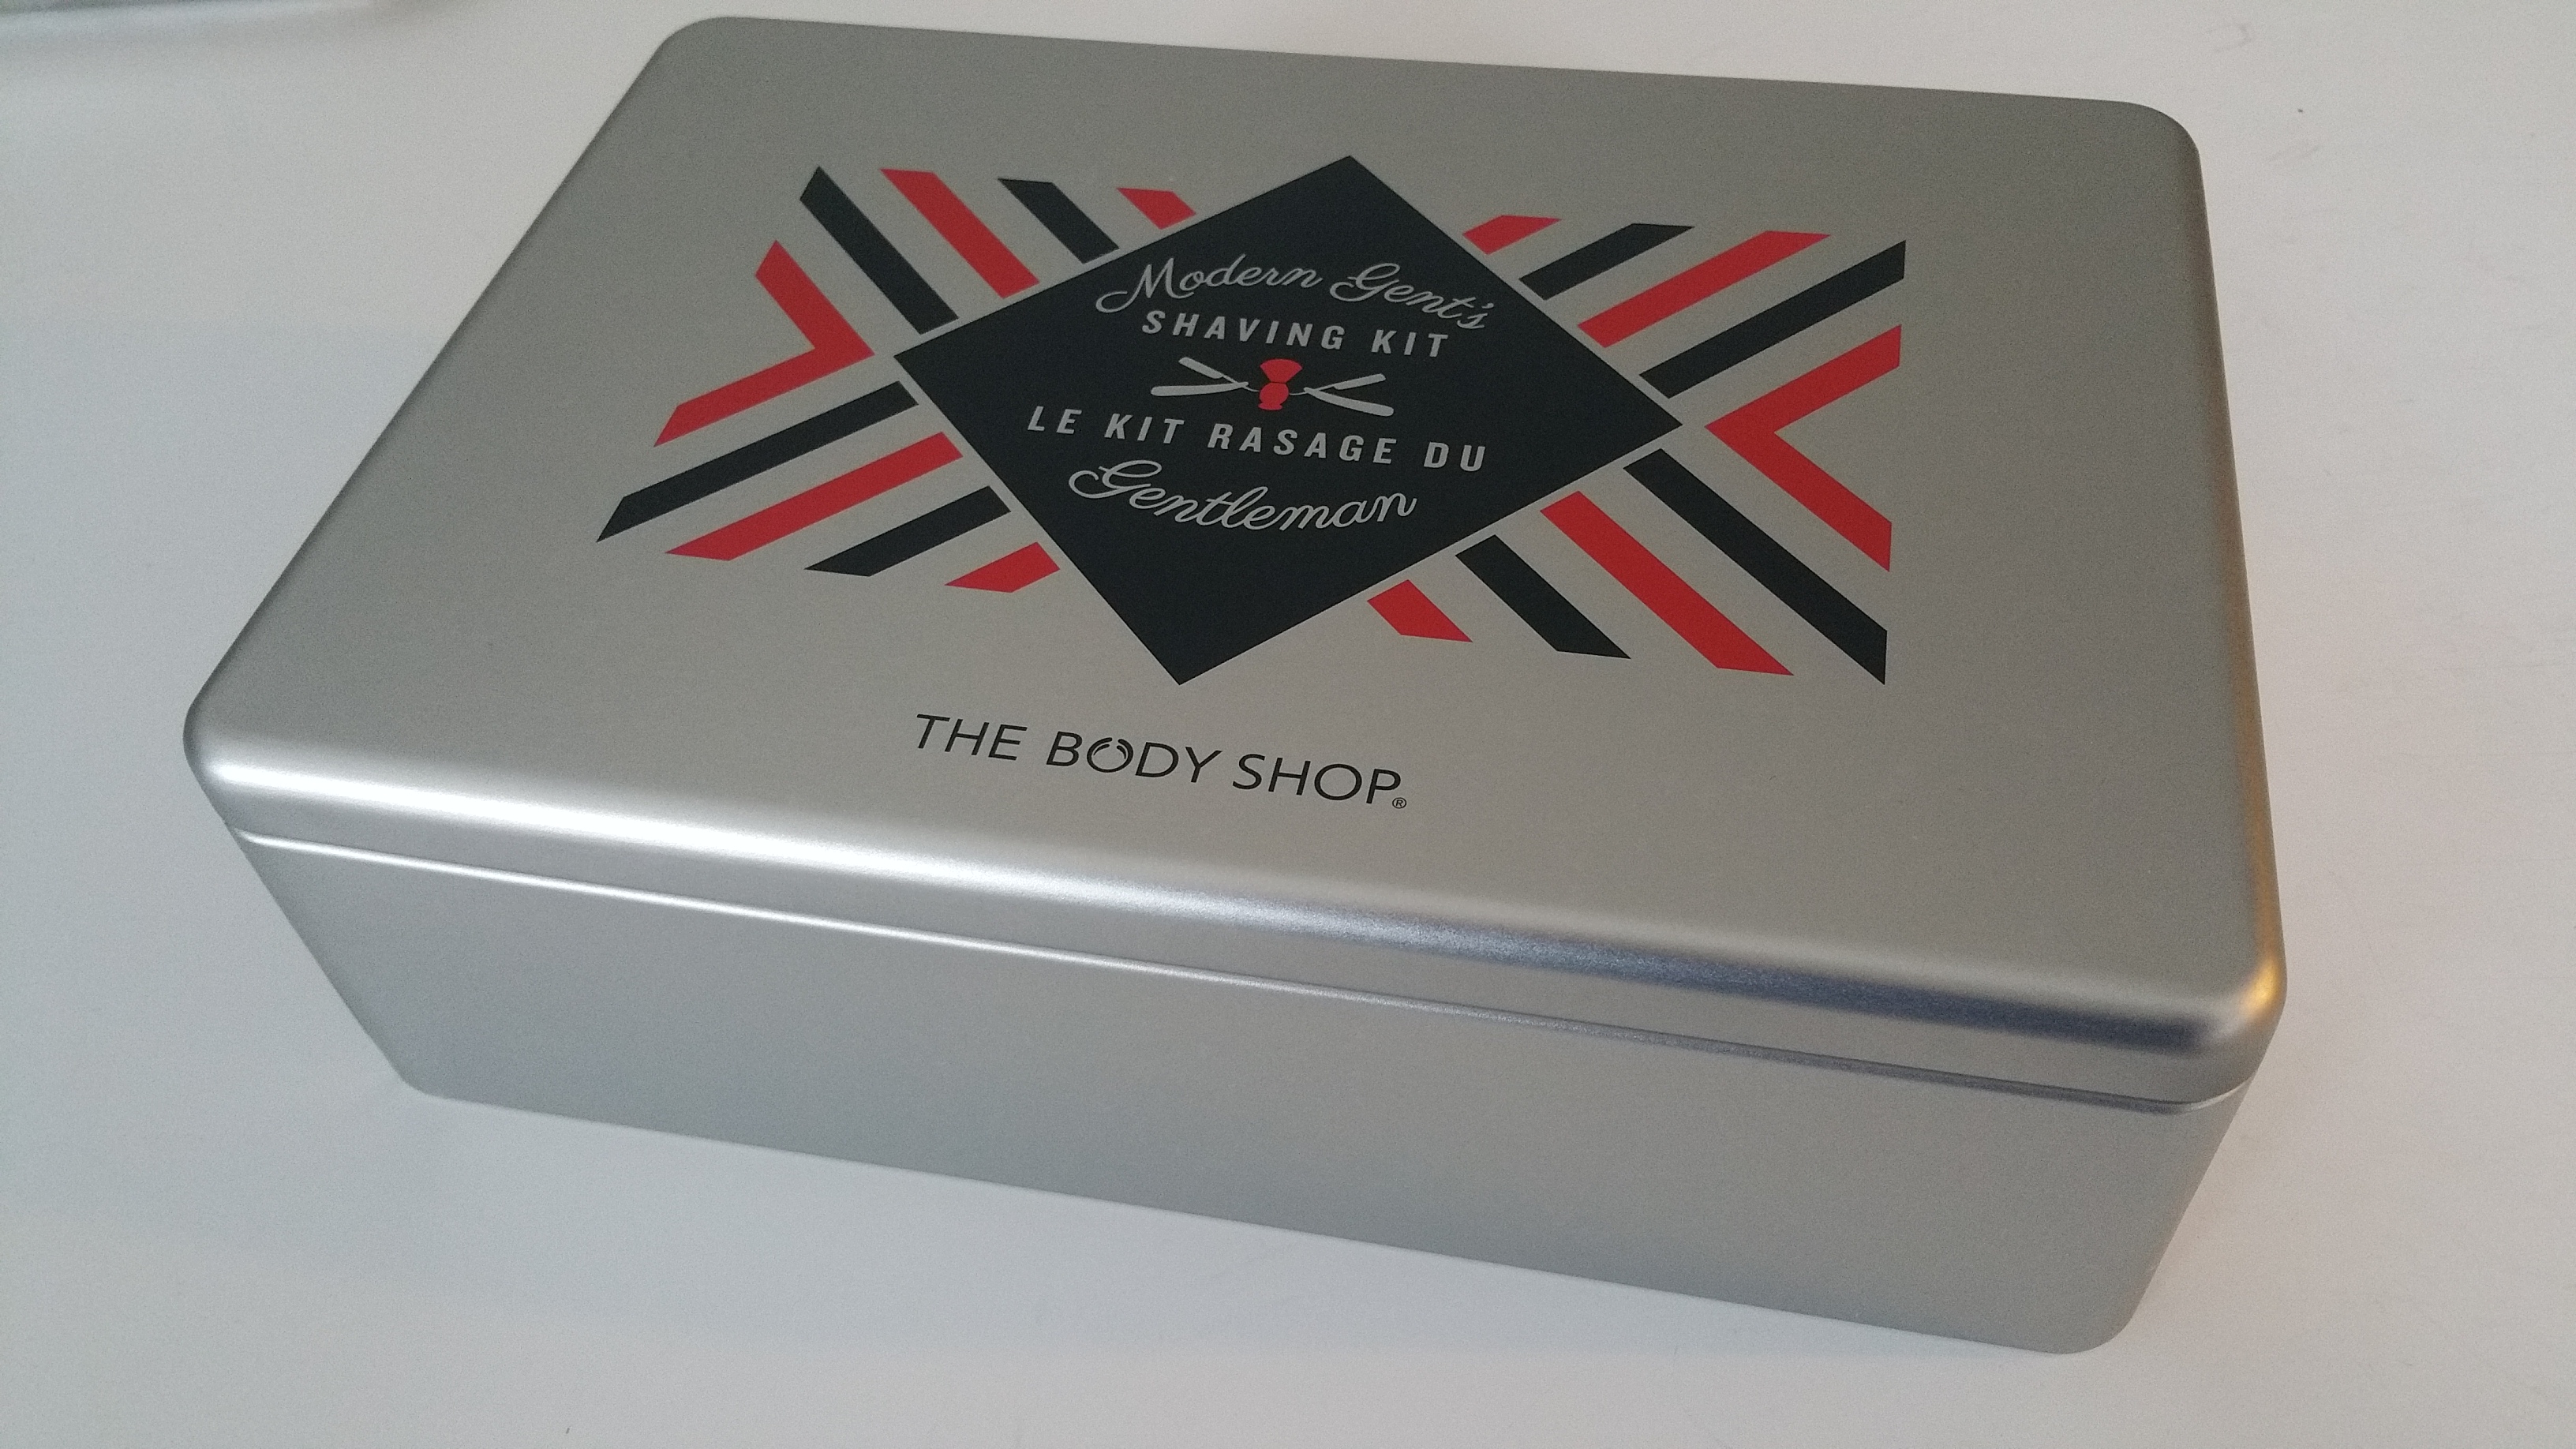 The Body Shop: Modern Gent’s Shaving Kit